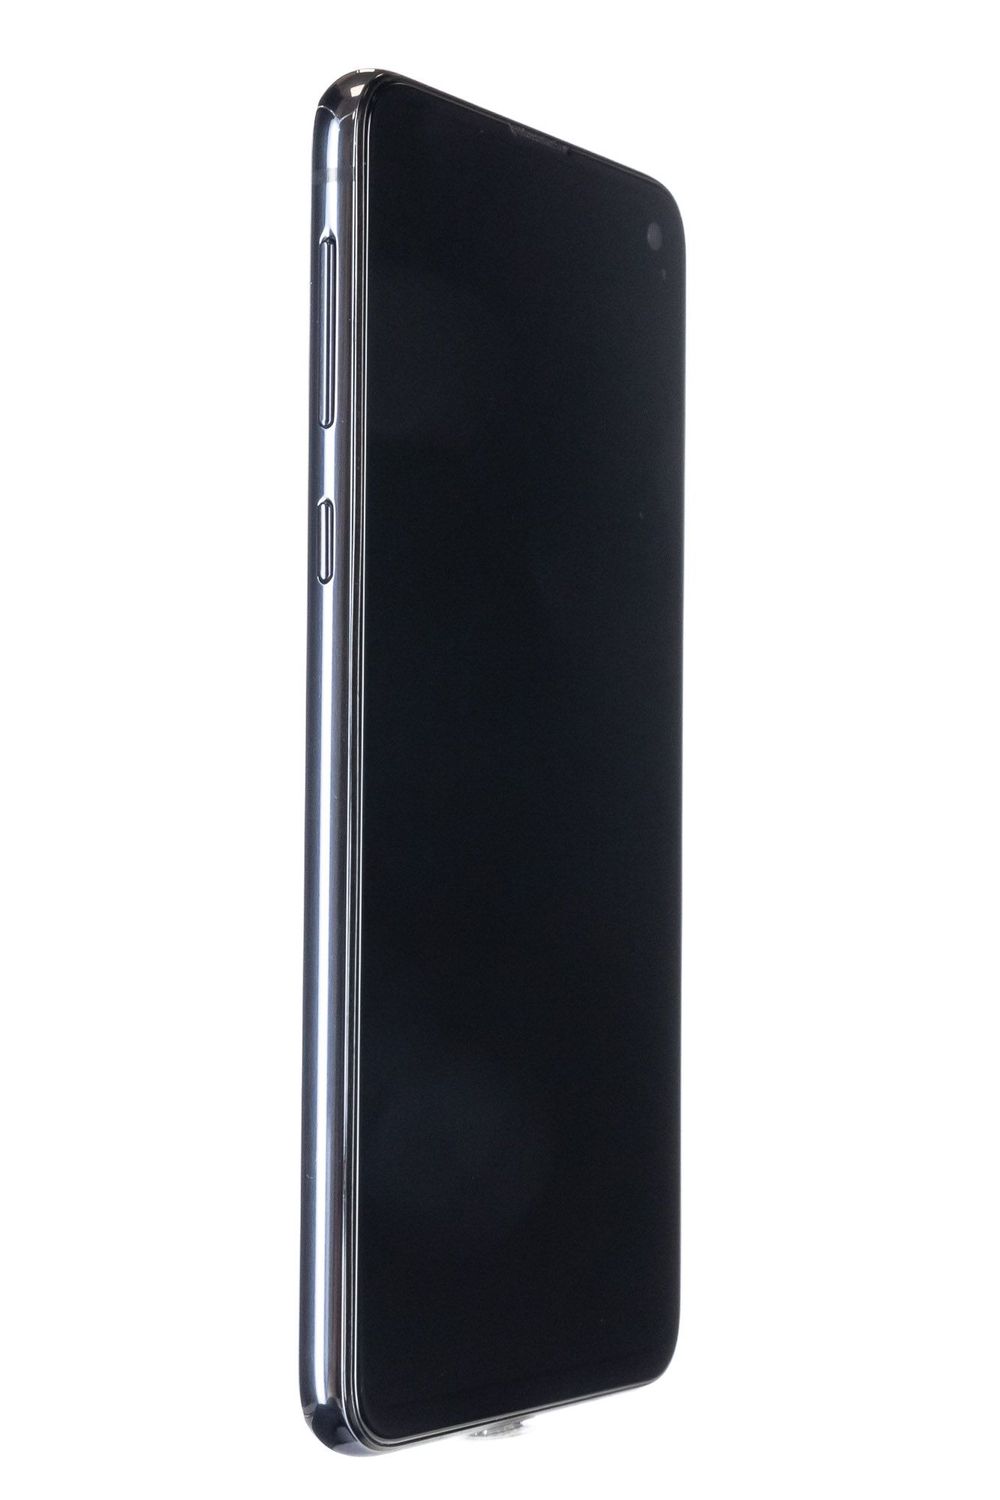 Κινητό τηλέφωνο Samsung Galaxy S10 e Dual Sim, Prism Black, 128 GB, Foarte Bun